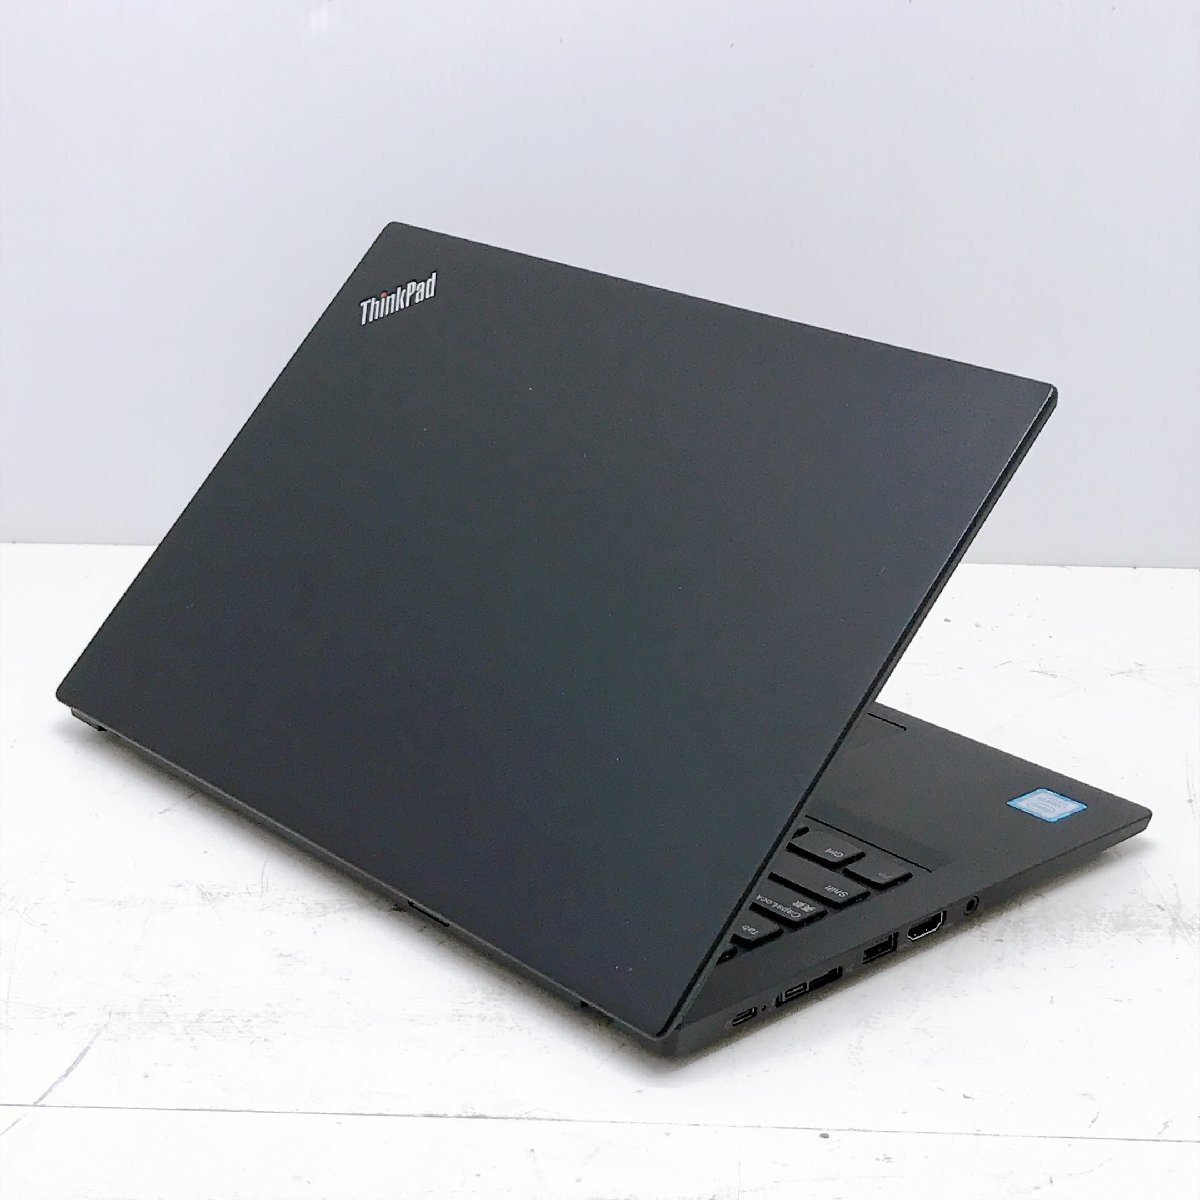 [ понедельник 13 час шт. конец ]Lenovo ThinkPad X280 Core i5 8250U 1.6GHz 8GB SSD256GB 12.5 б/у товар ноутбук H12409